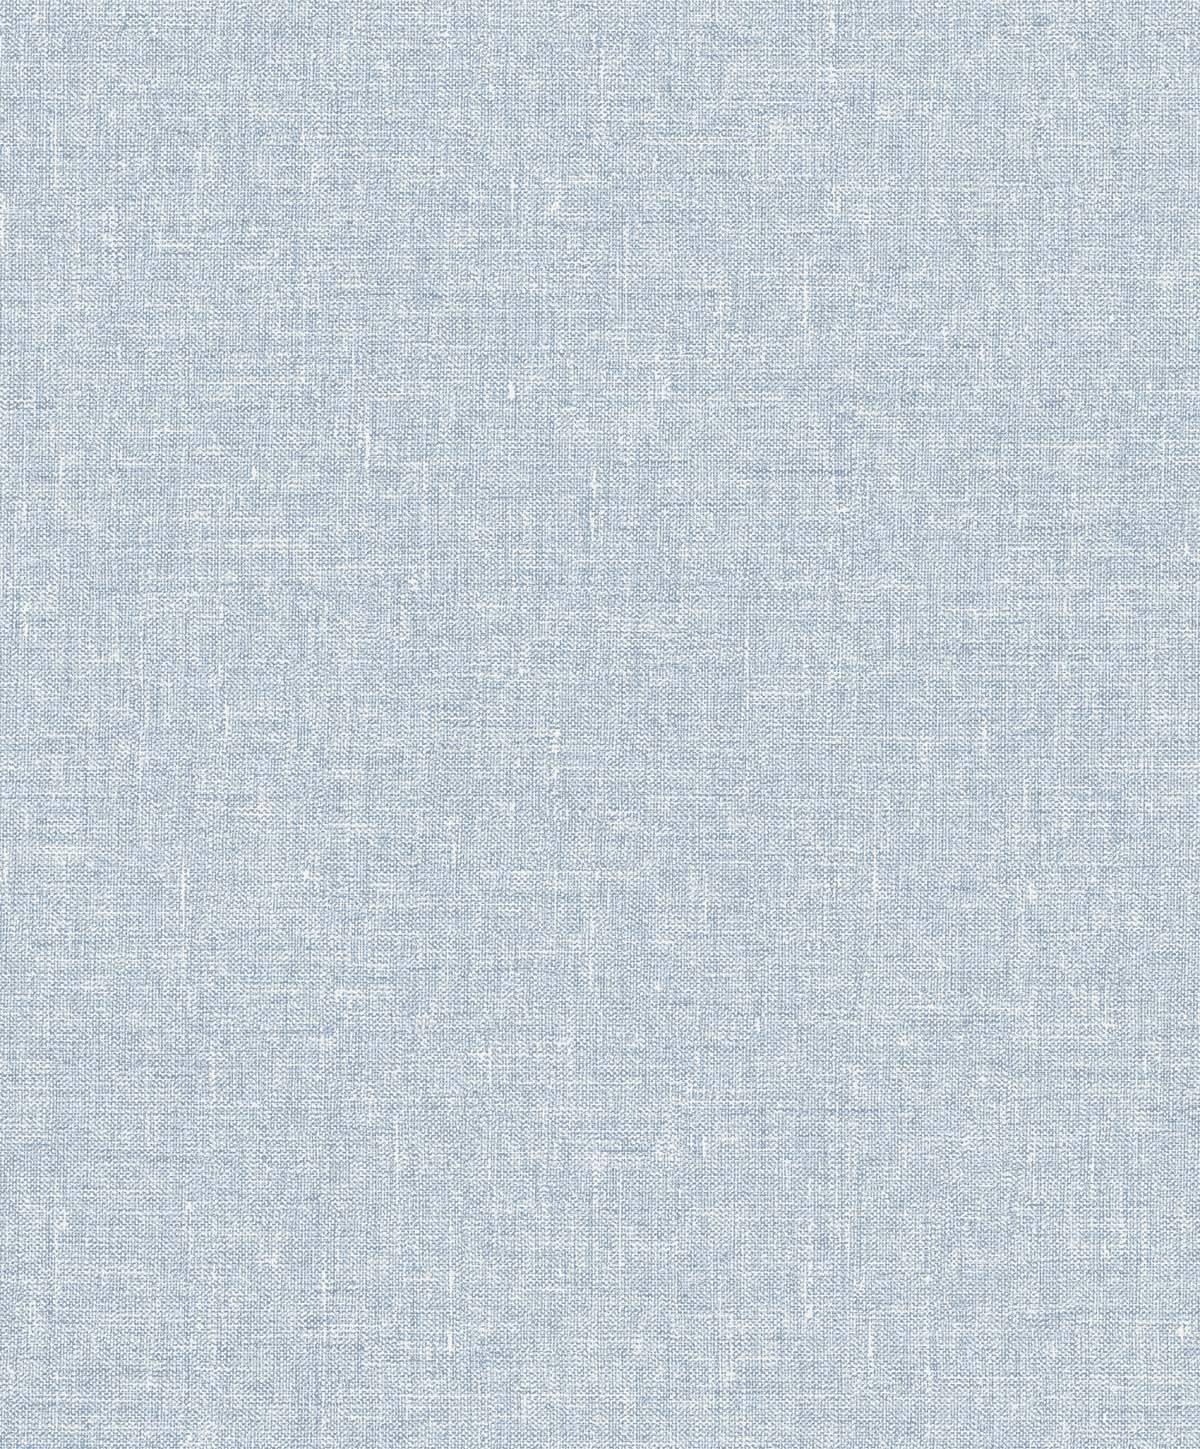 SL81132 | Soft Linen , Blue - Seabrook Designs Wallpaper